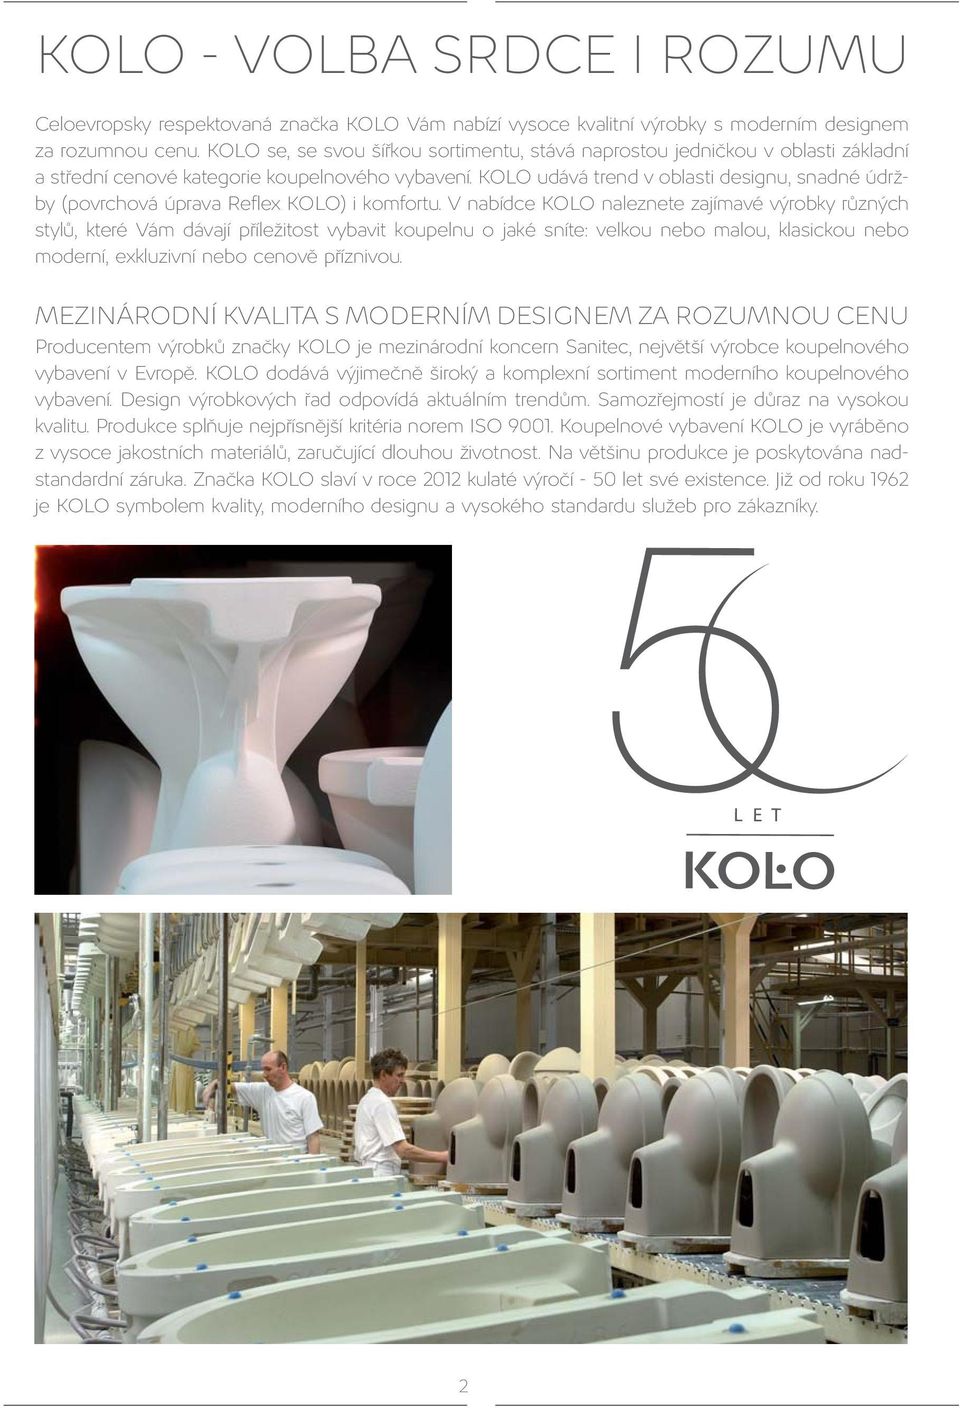 KOLO udává trend v oblasti designu, snadné údržby (povrchová úprava Reflex KOLO) i komfortu.